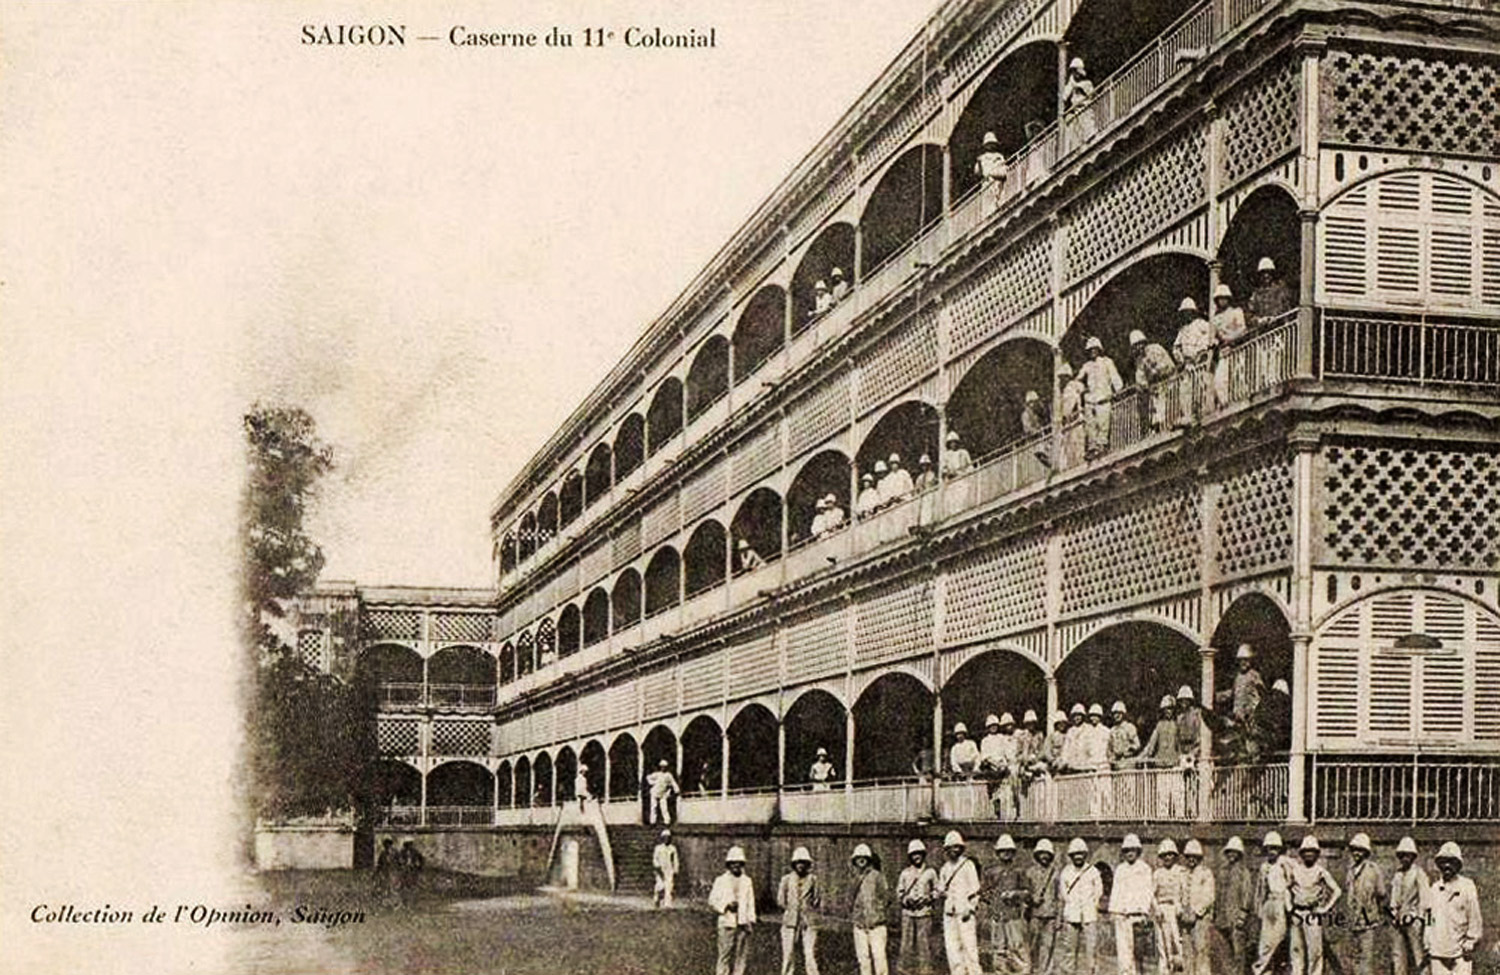 SAIGON - CASERNE DU 11e COLONIAL